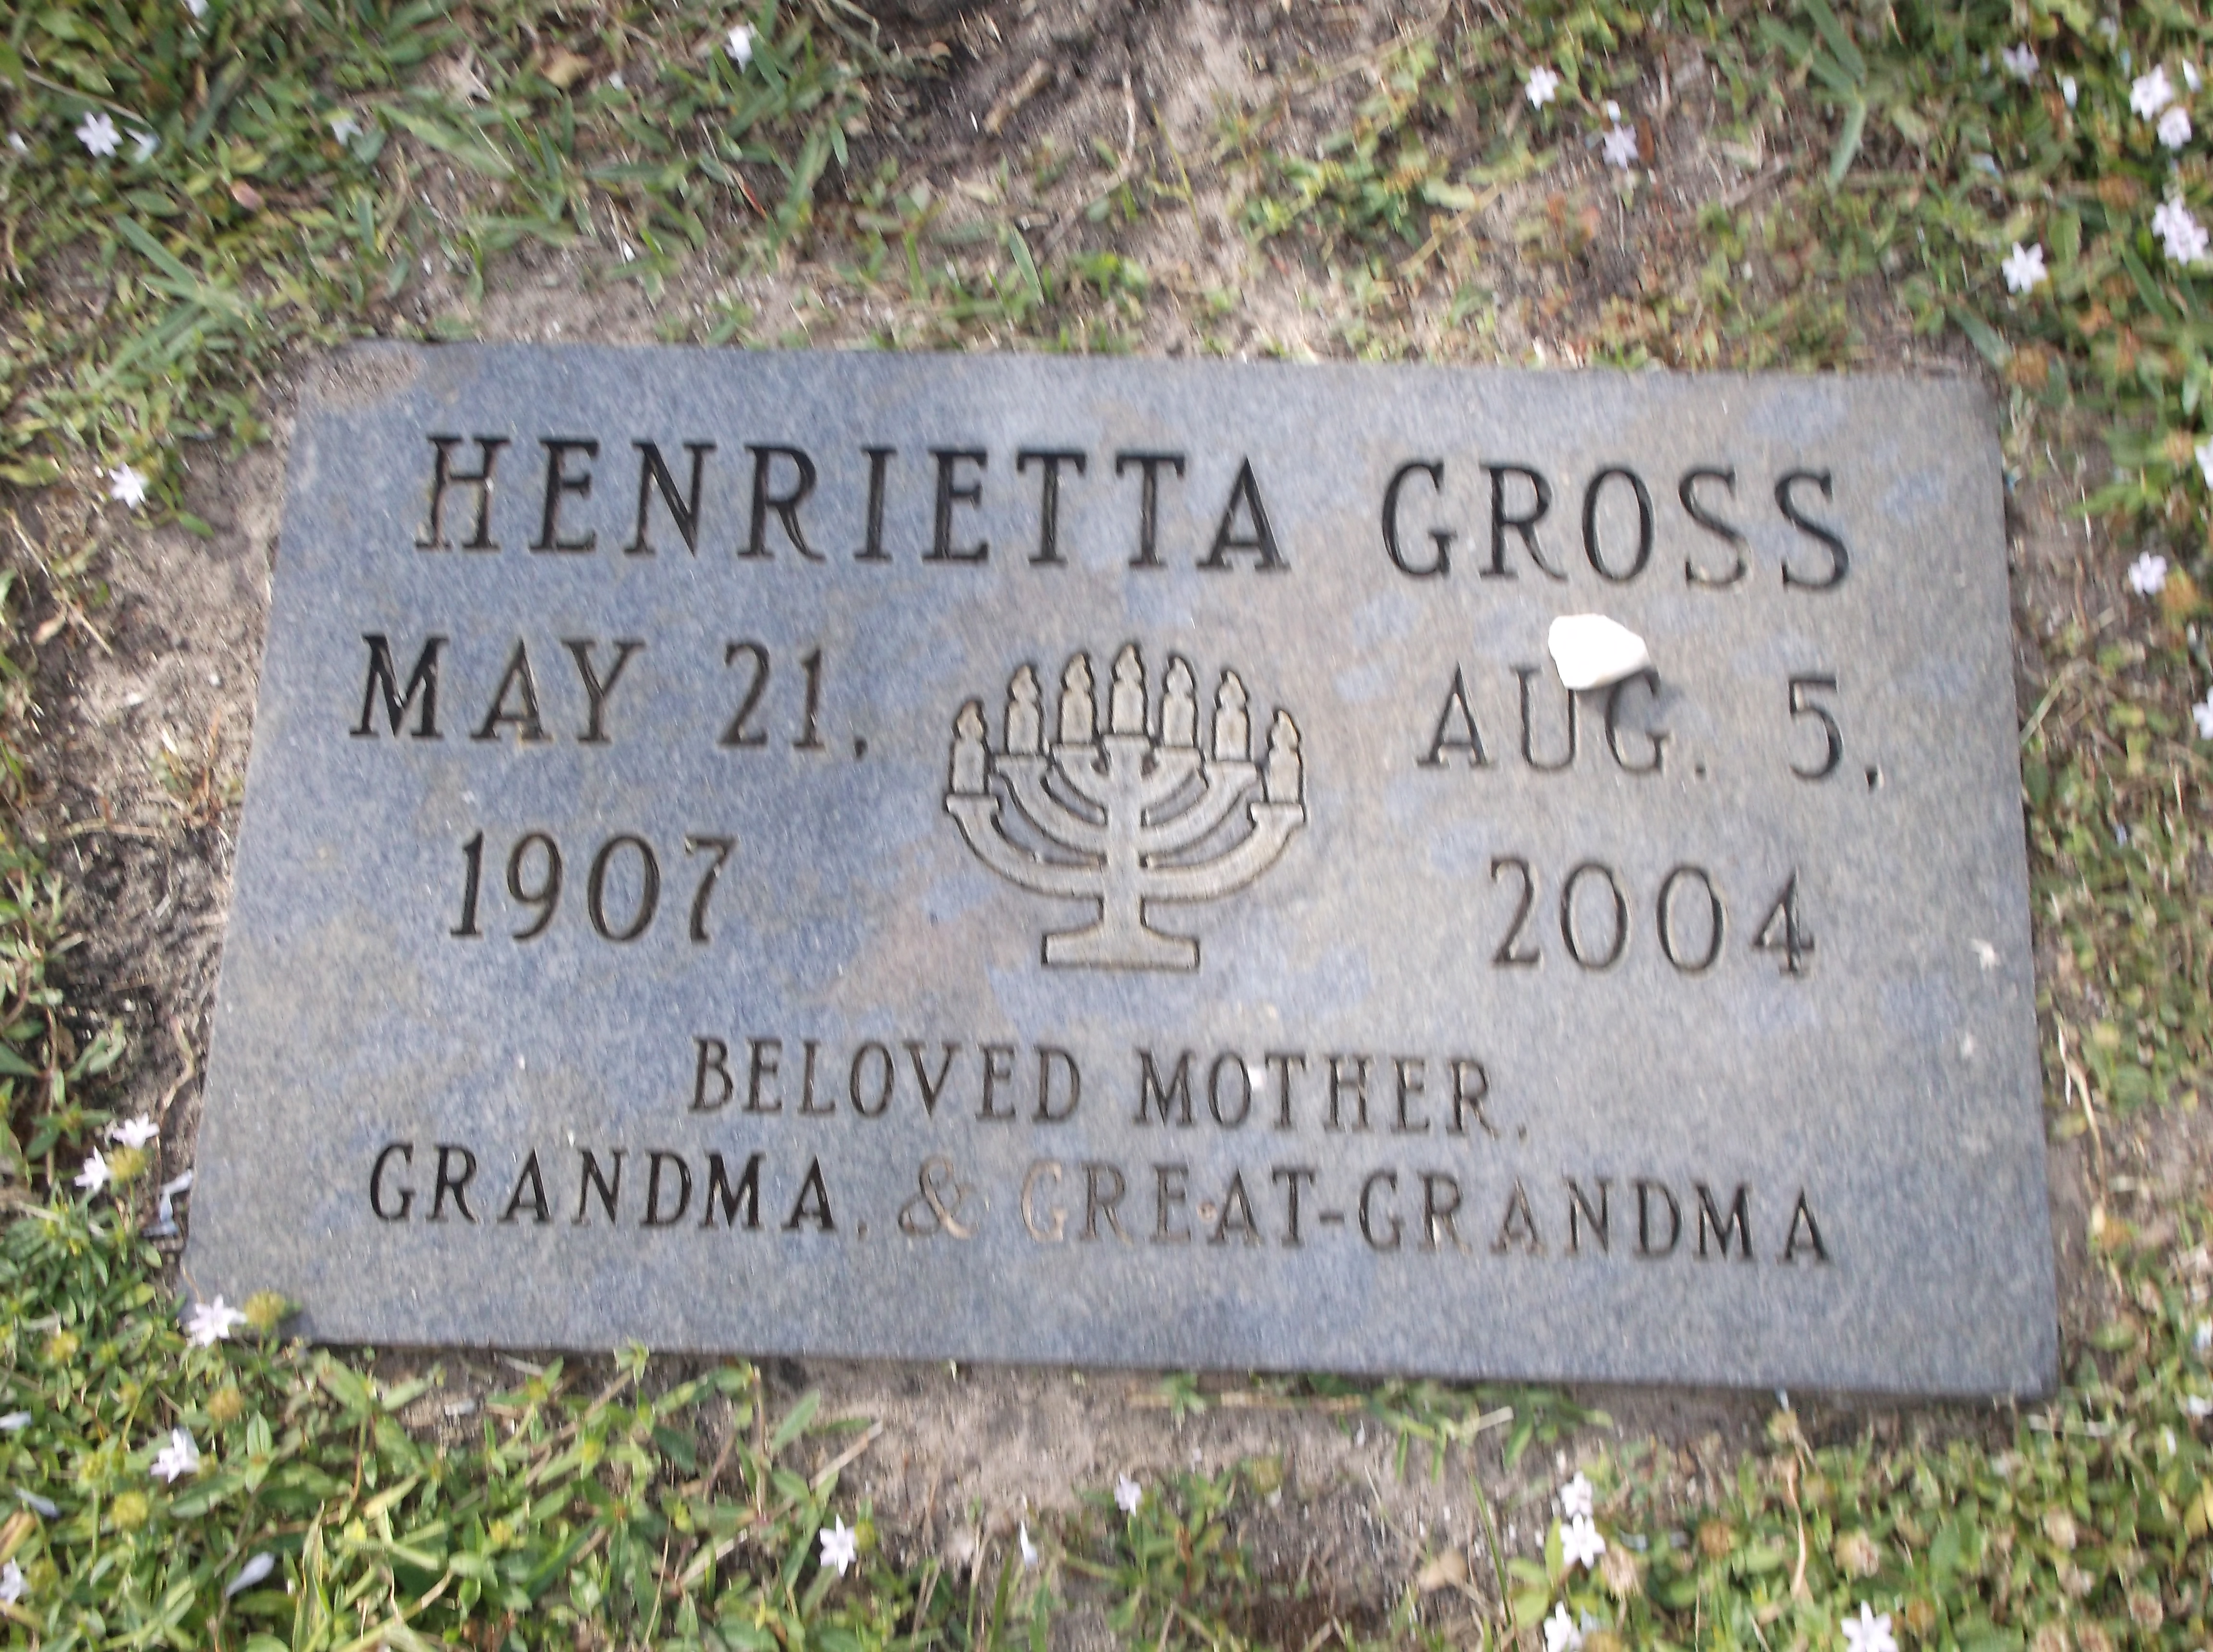 Henrietta Gross